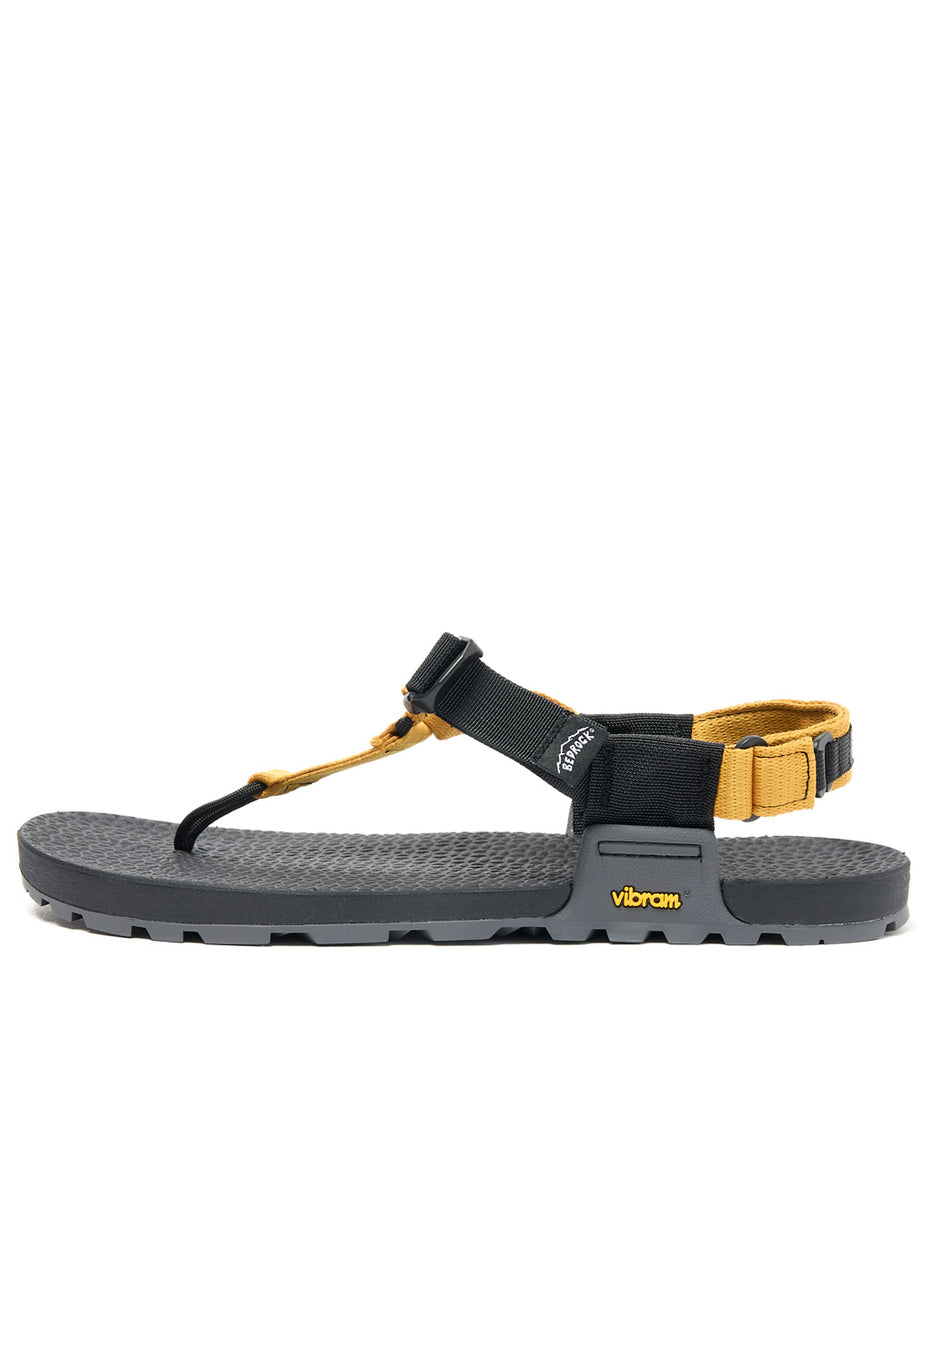 Bedrock Sandals Cairn Evo 3D Pro Sandals - Yellow Ochre